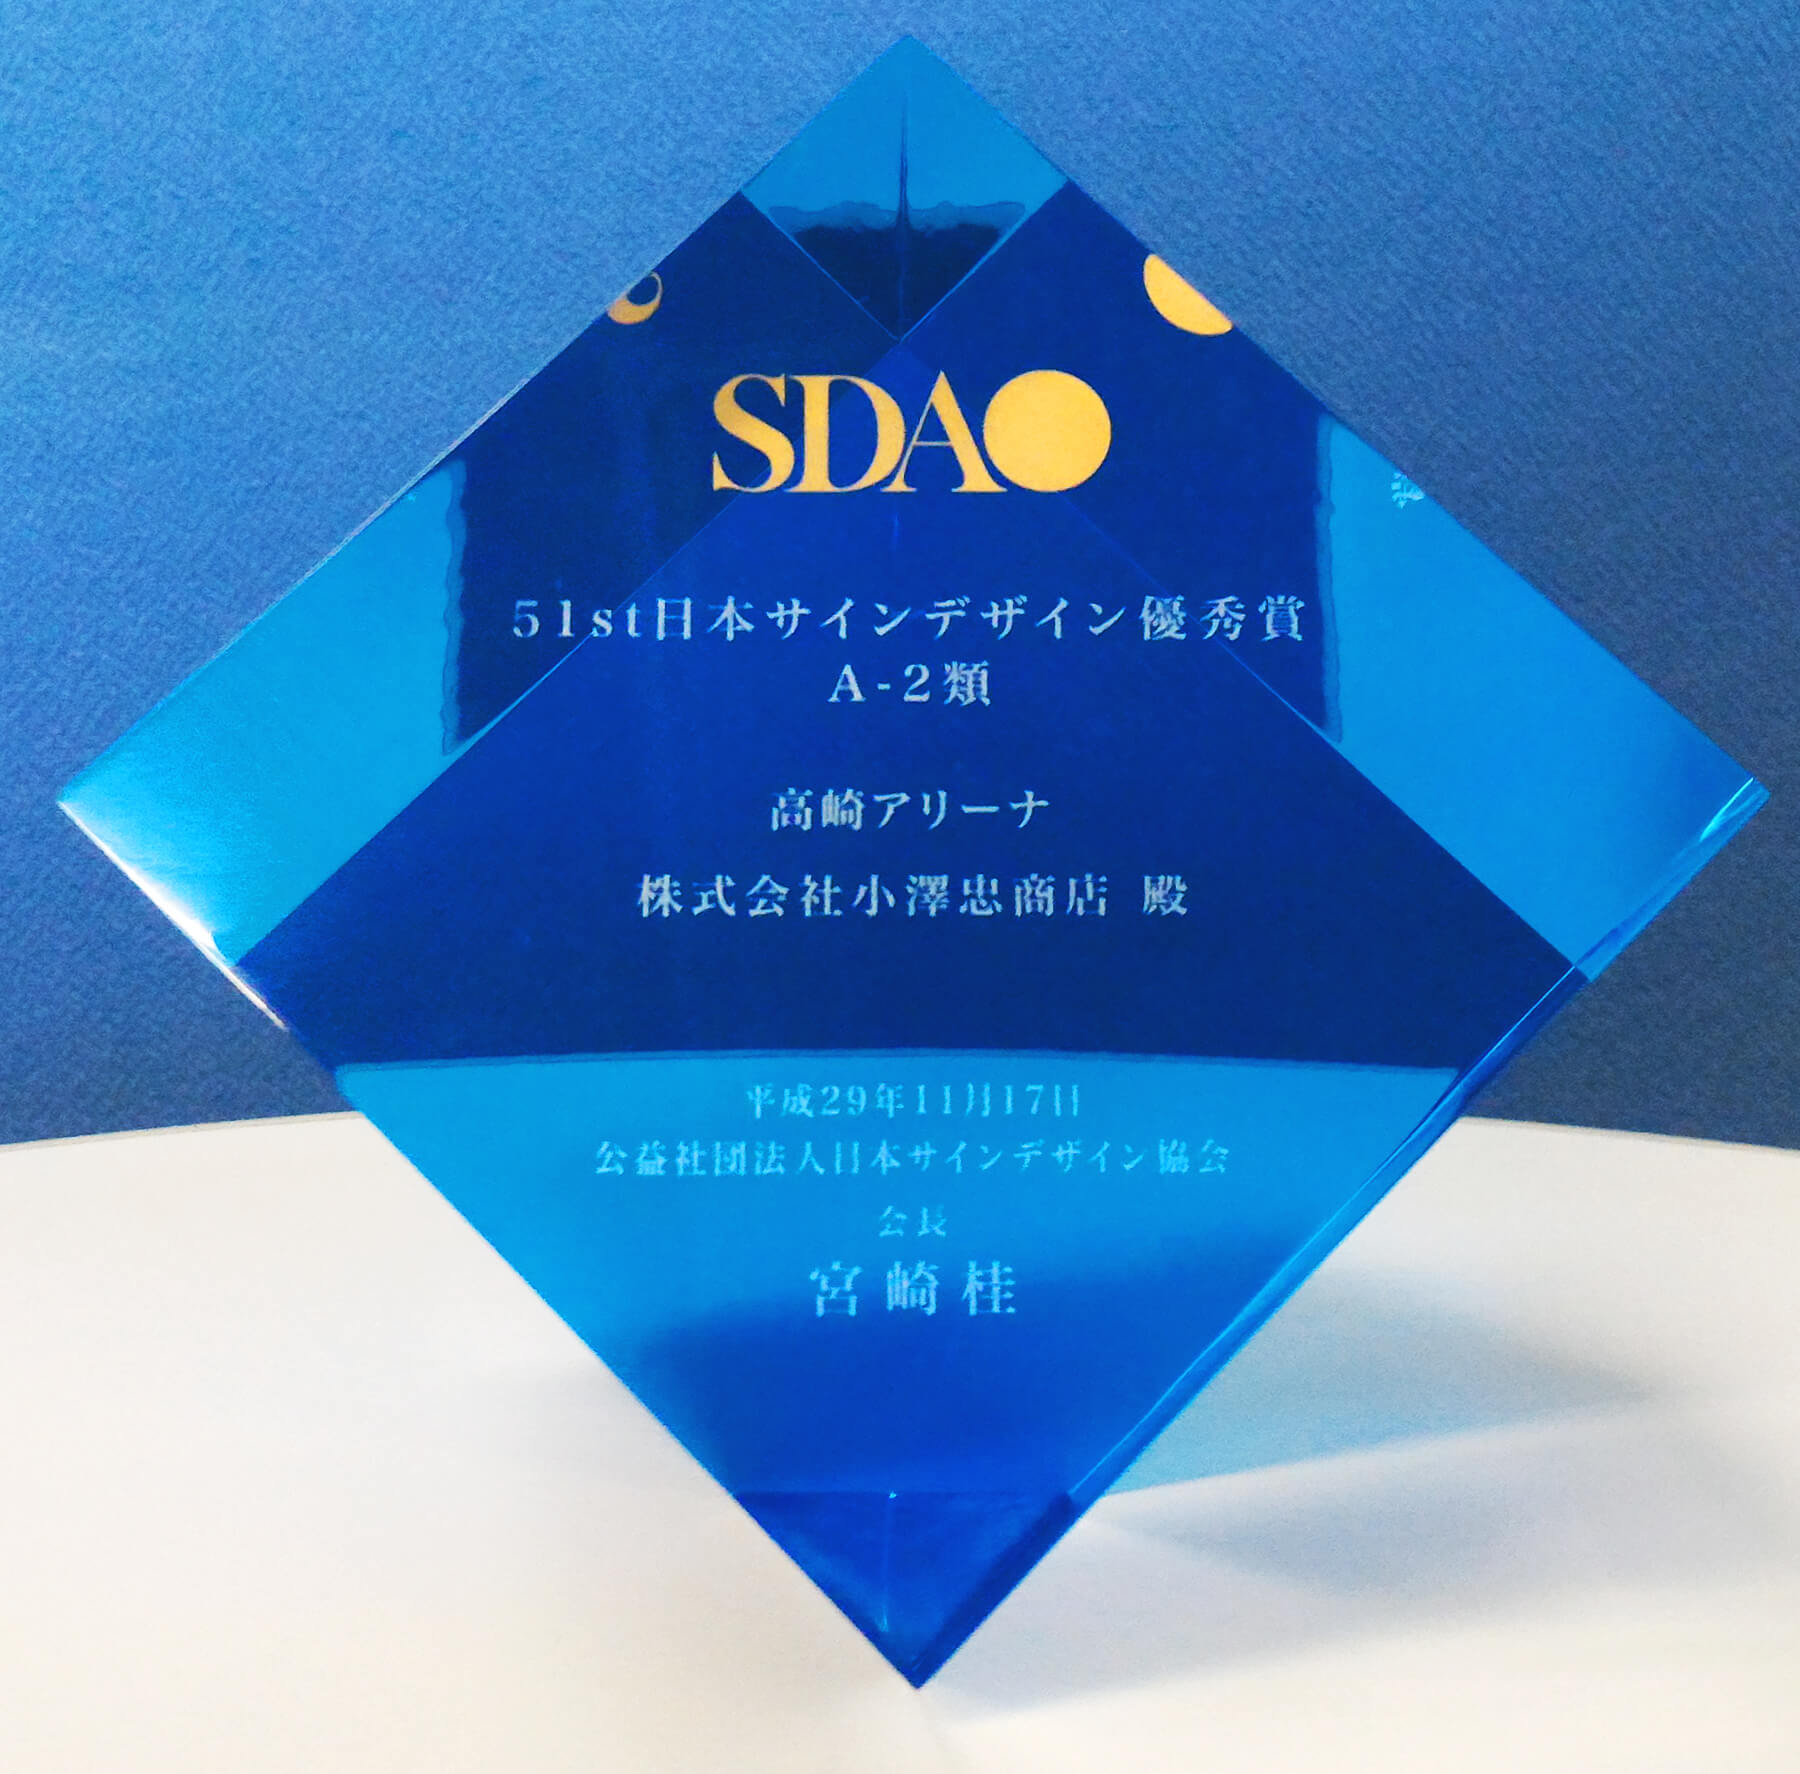 第51回日本サインデザイン賞 公共サイン部門受賞のオブジェ